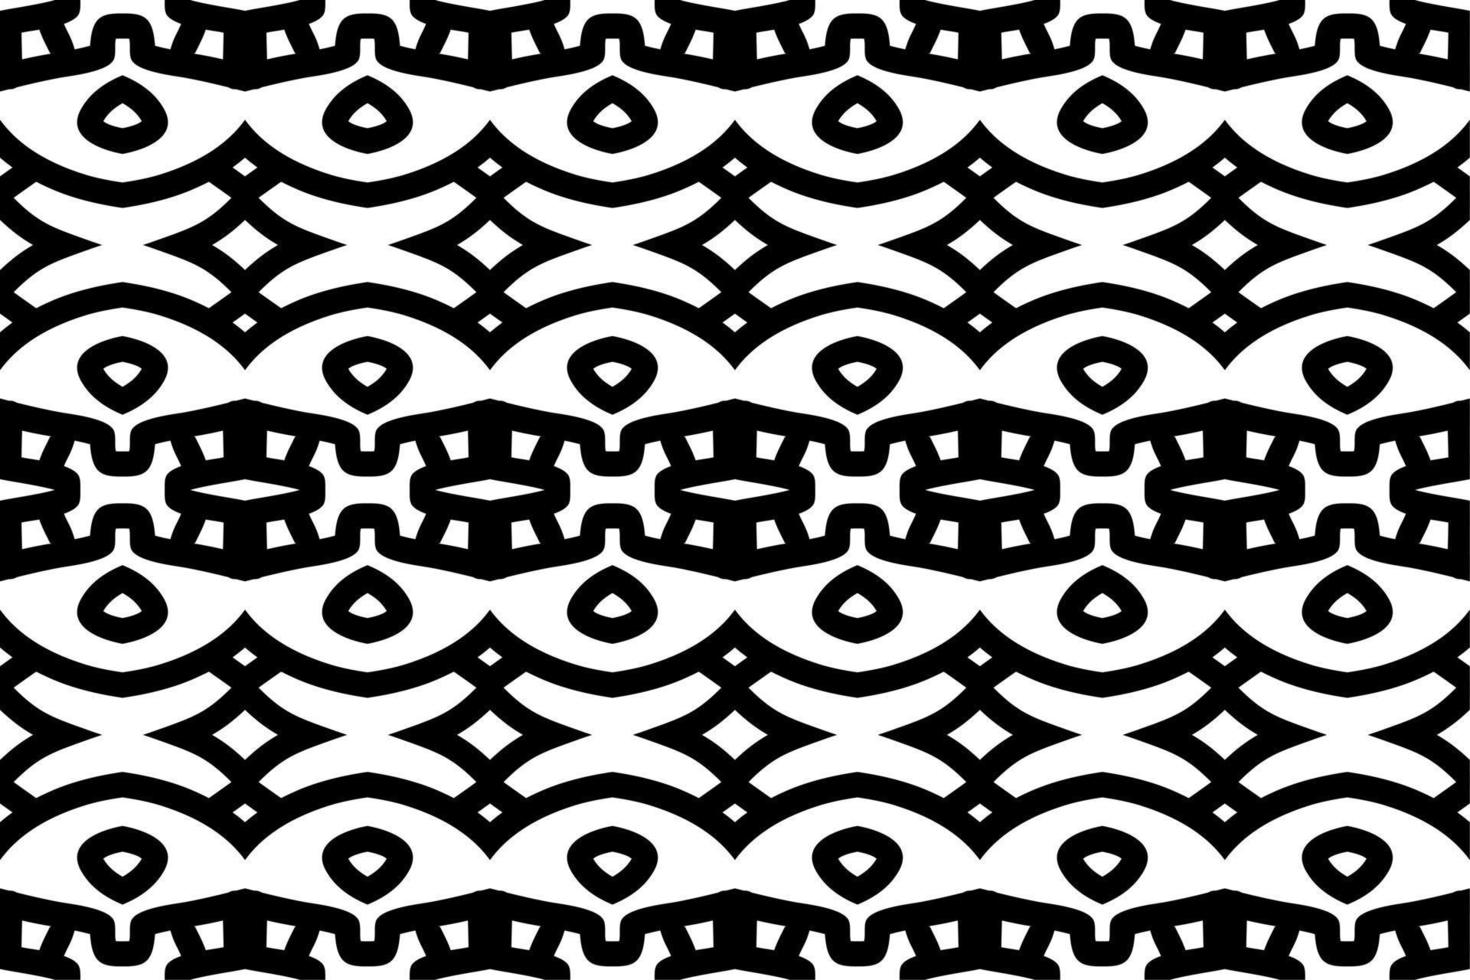 sömlös mönster. svart och vit enkel bakgrund. vektor